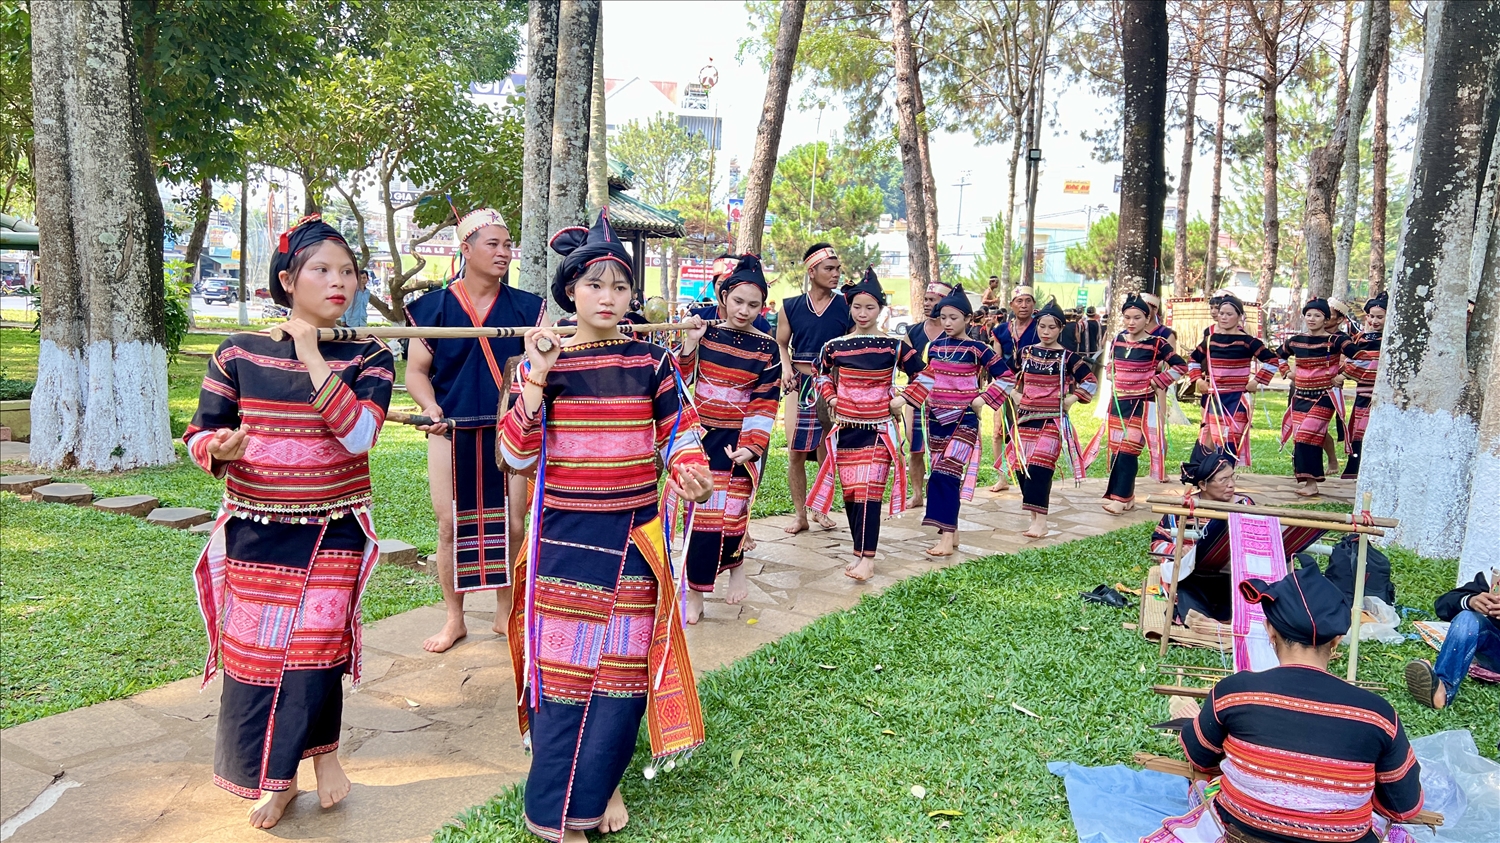 Ngày hội có sự tham gia trình diễn của gần 800 nghệ nhân đến từ 7 dân tộc trên địa bàn tỉnh Gia Lai